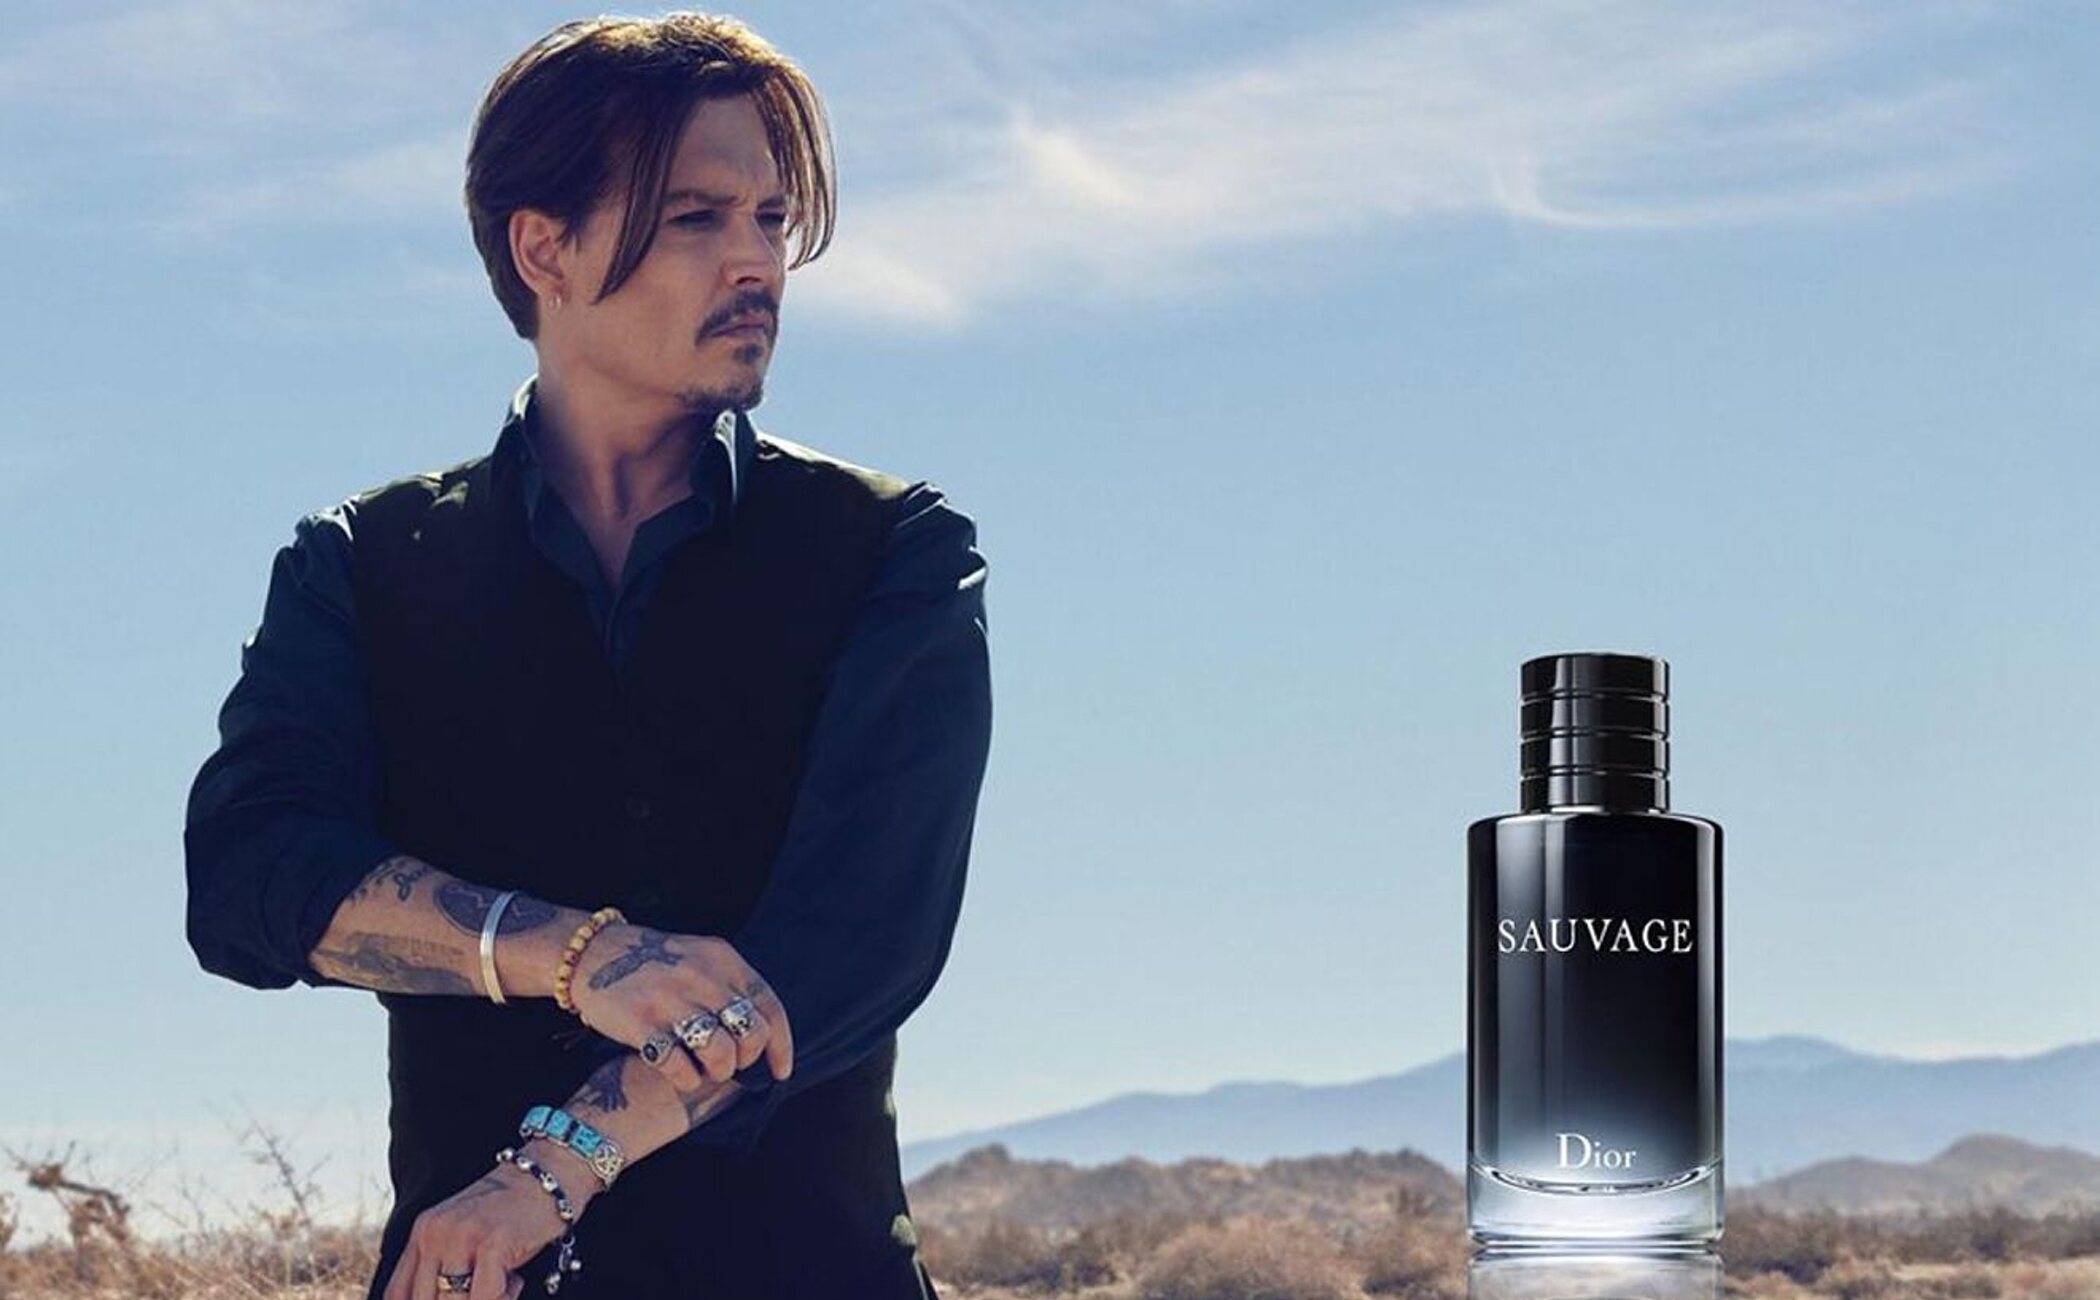 Johnny Depp vuelve a ser imagen de 'Sauvage' de Dior con el contrato más alto en historia de las fragancias masculinas